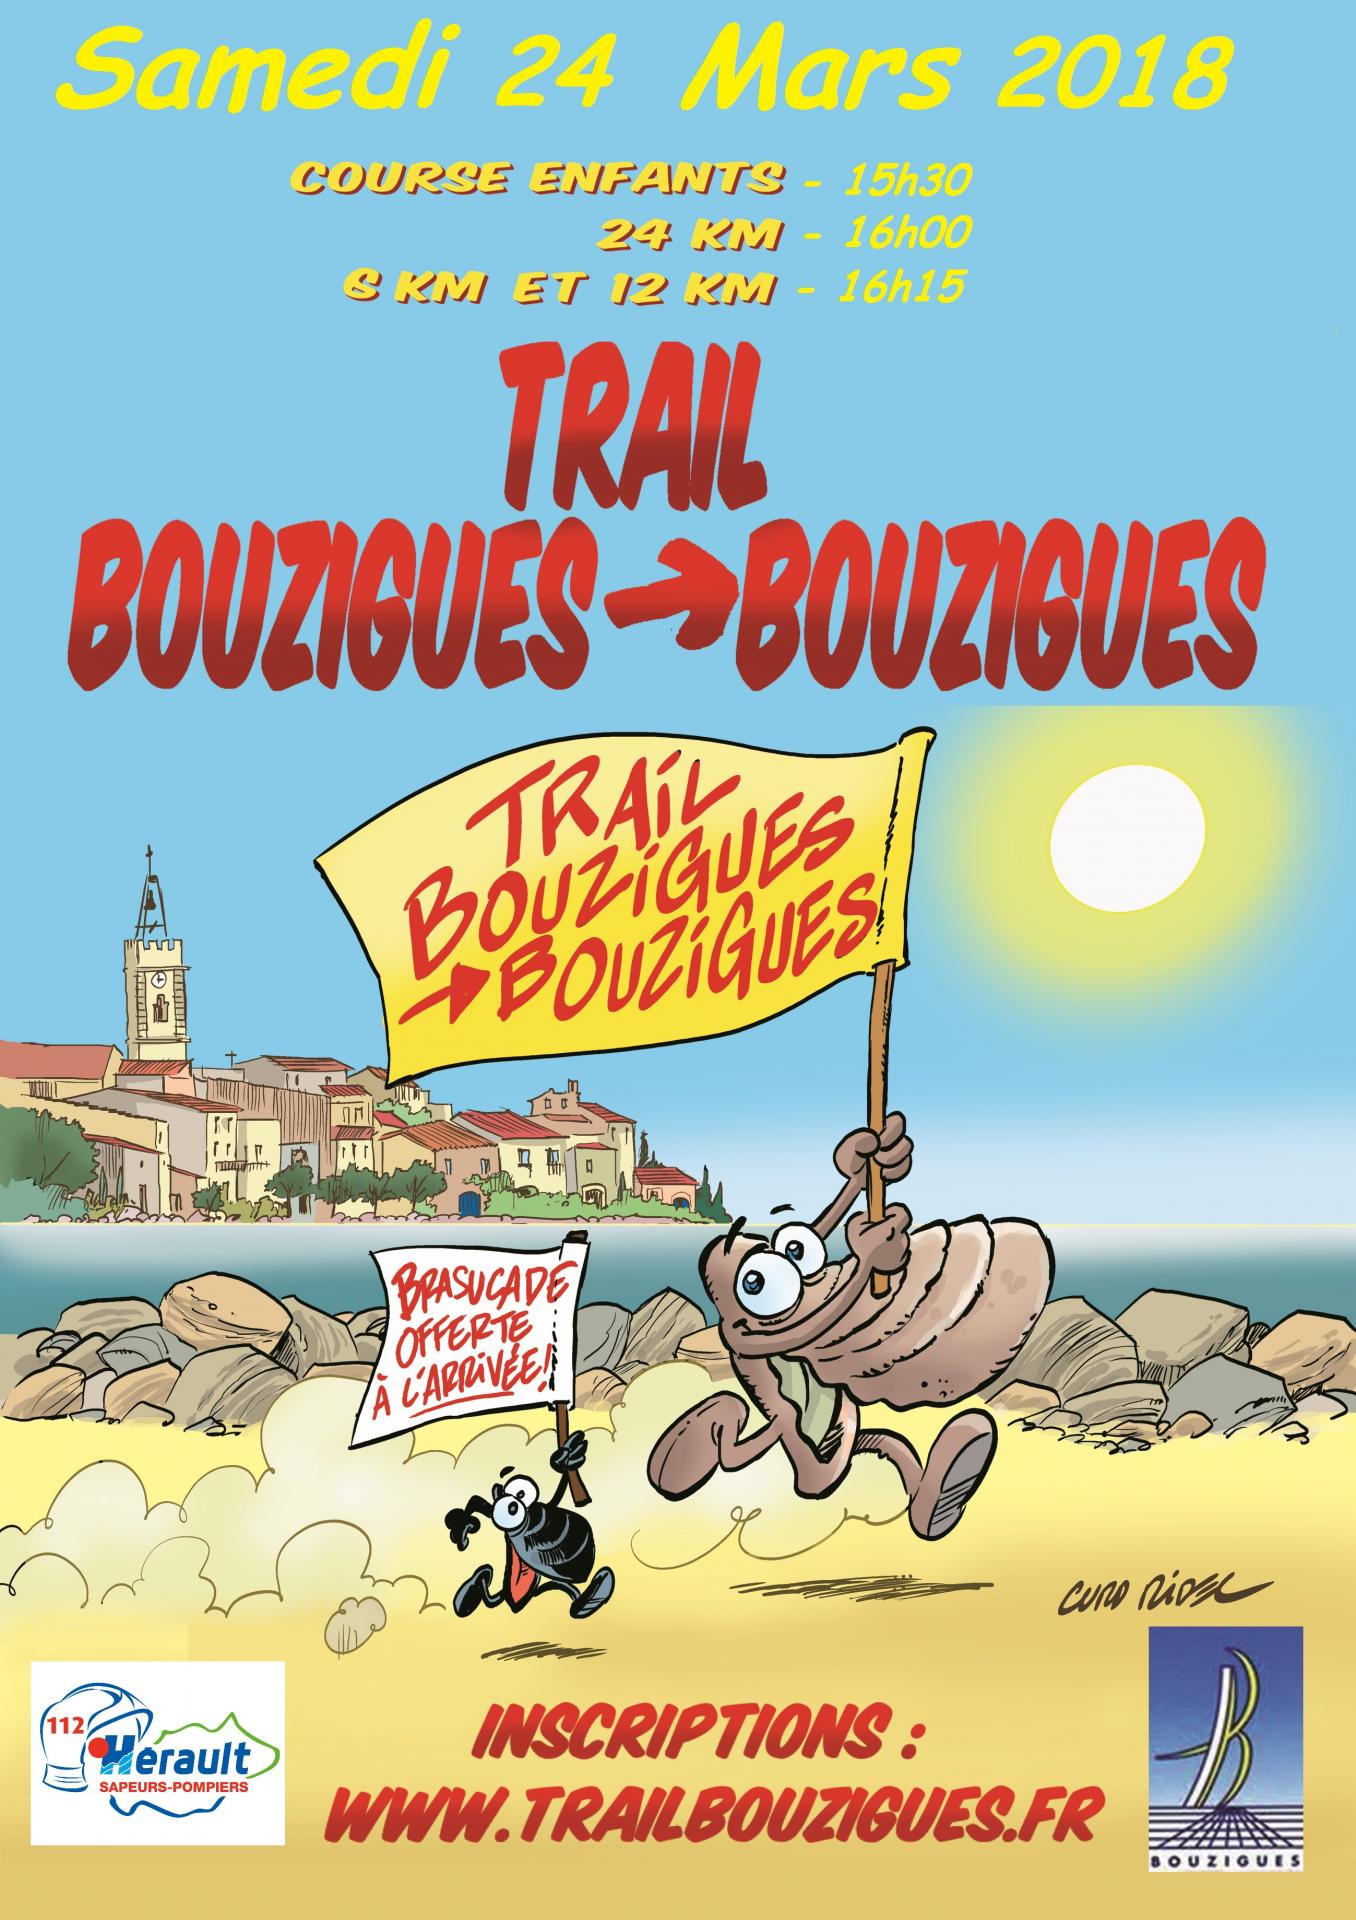 Trailbouzigues